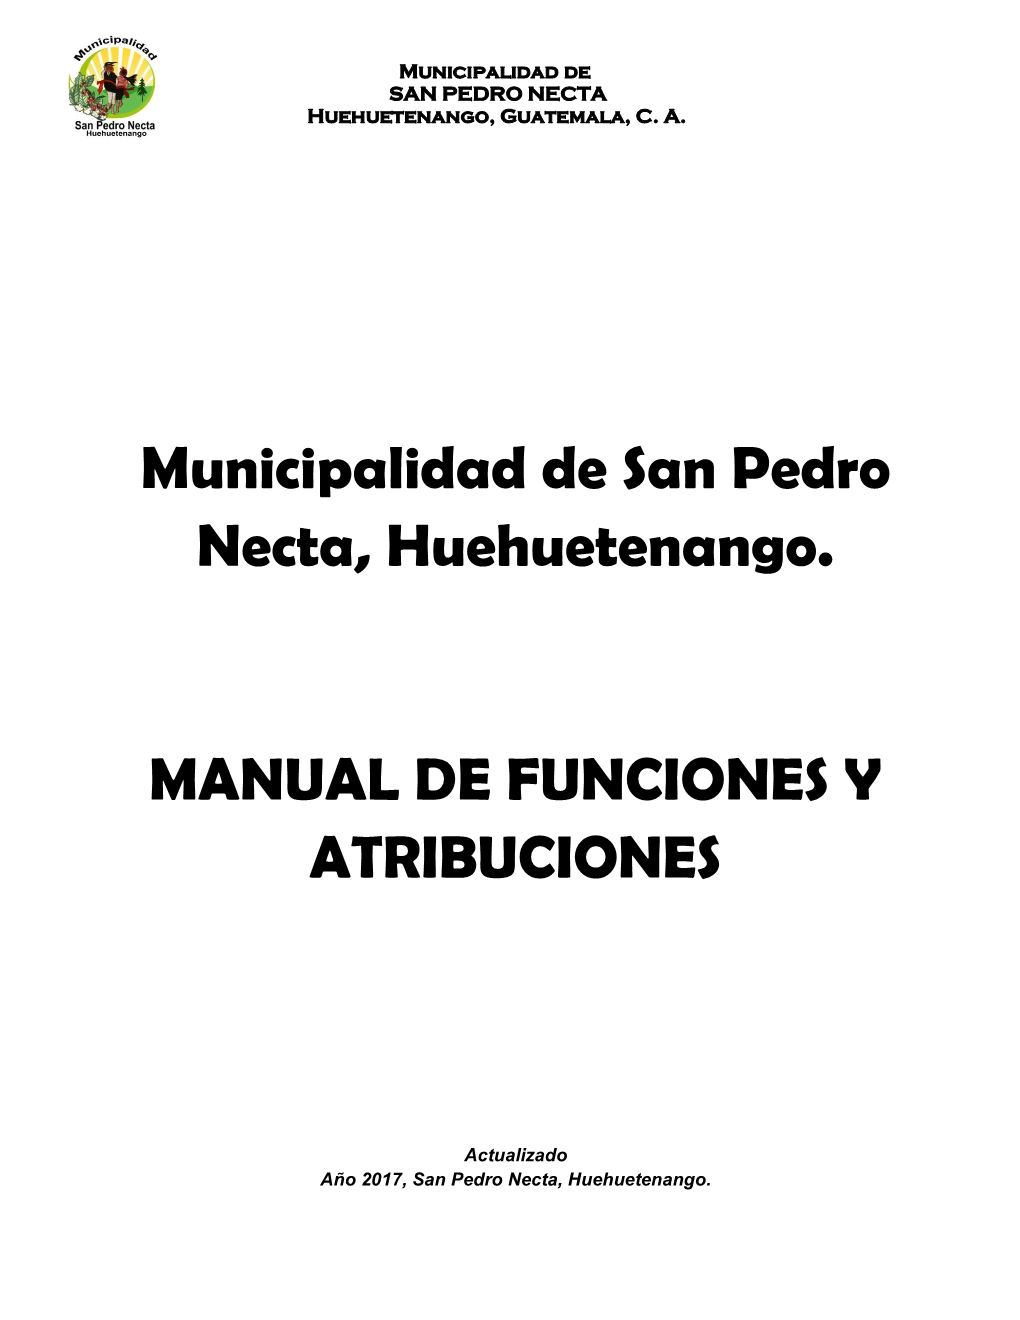 Manual De Funciones Y Atribuciones Municipalidad De San Pedro Necta Huehuetenango